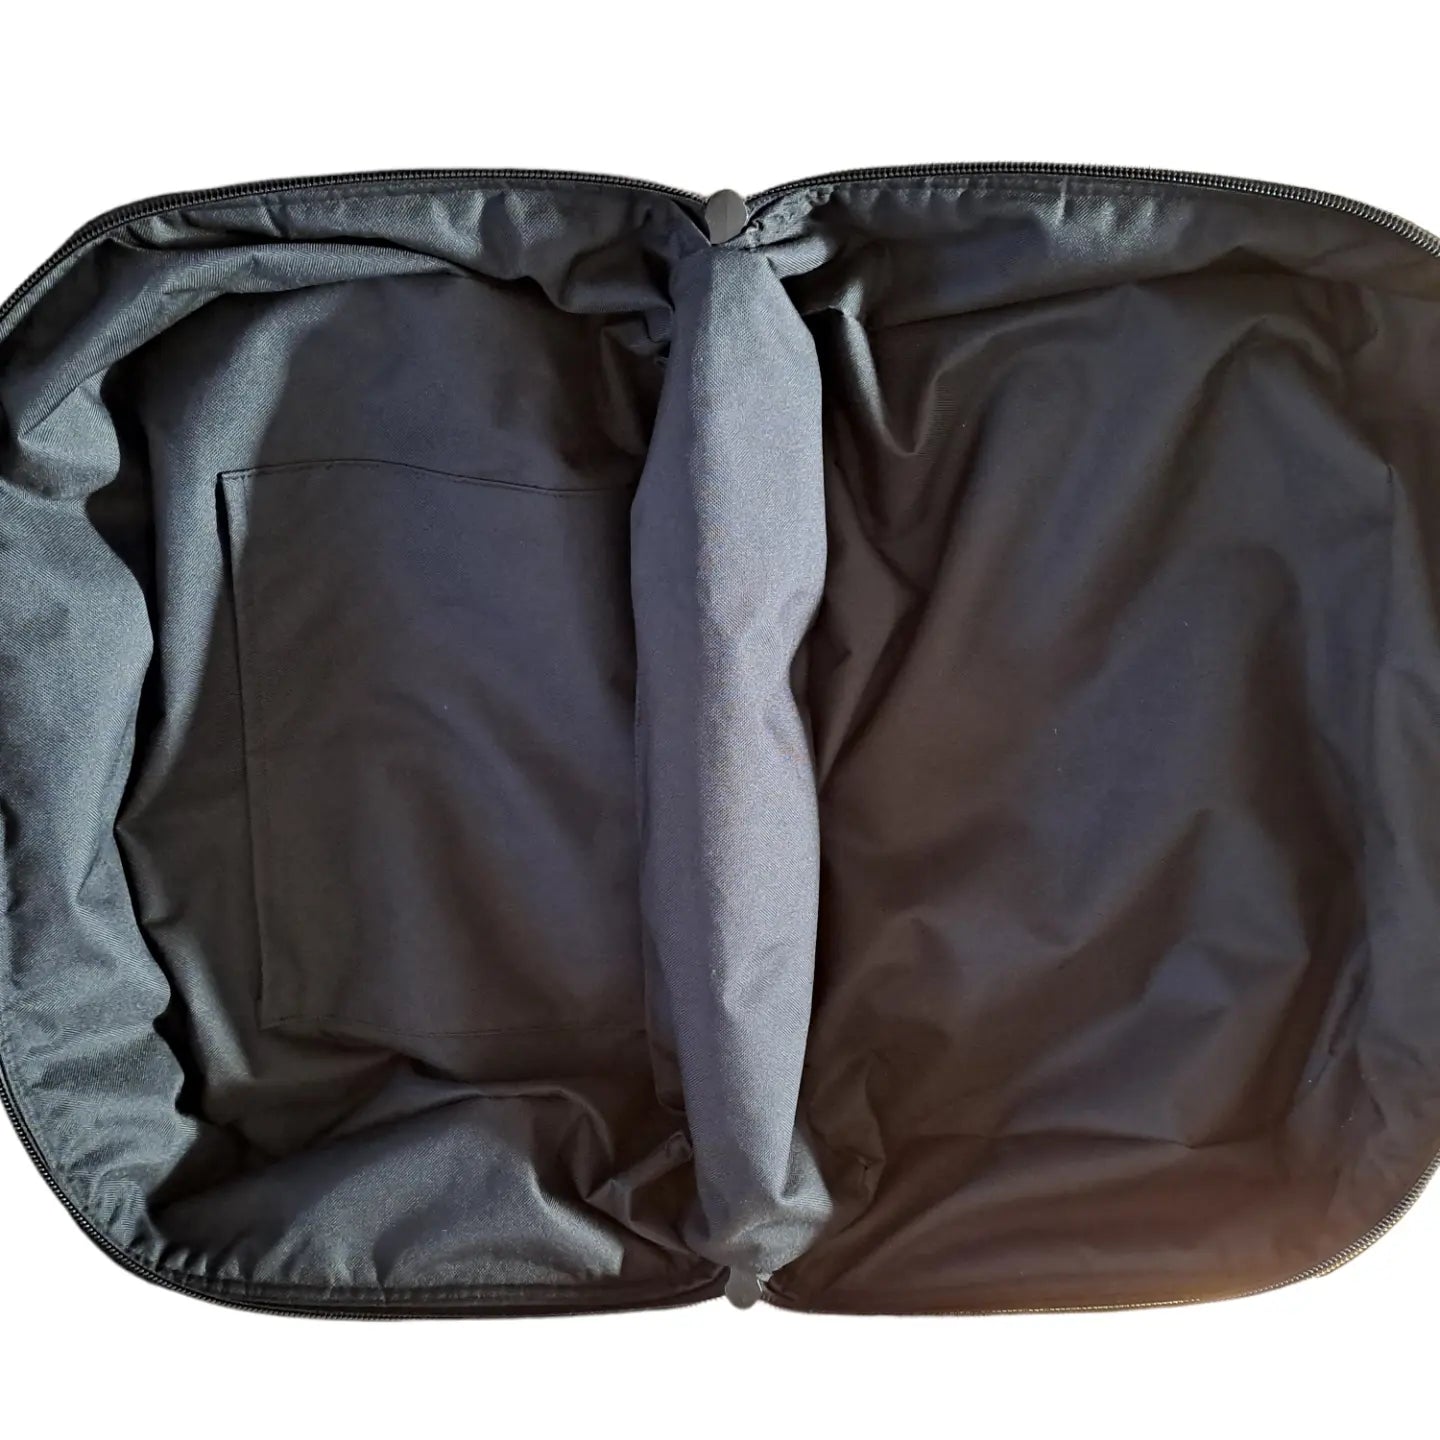 TraDishNal Overnight Travel Bag Bags & Handbags TraDishNal 